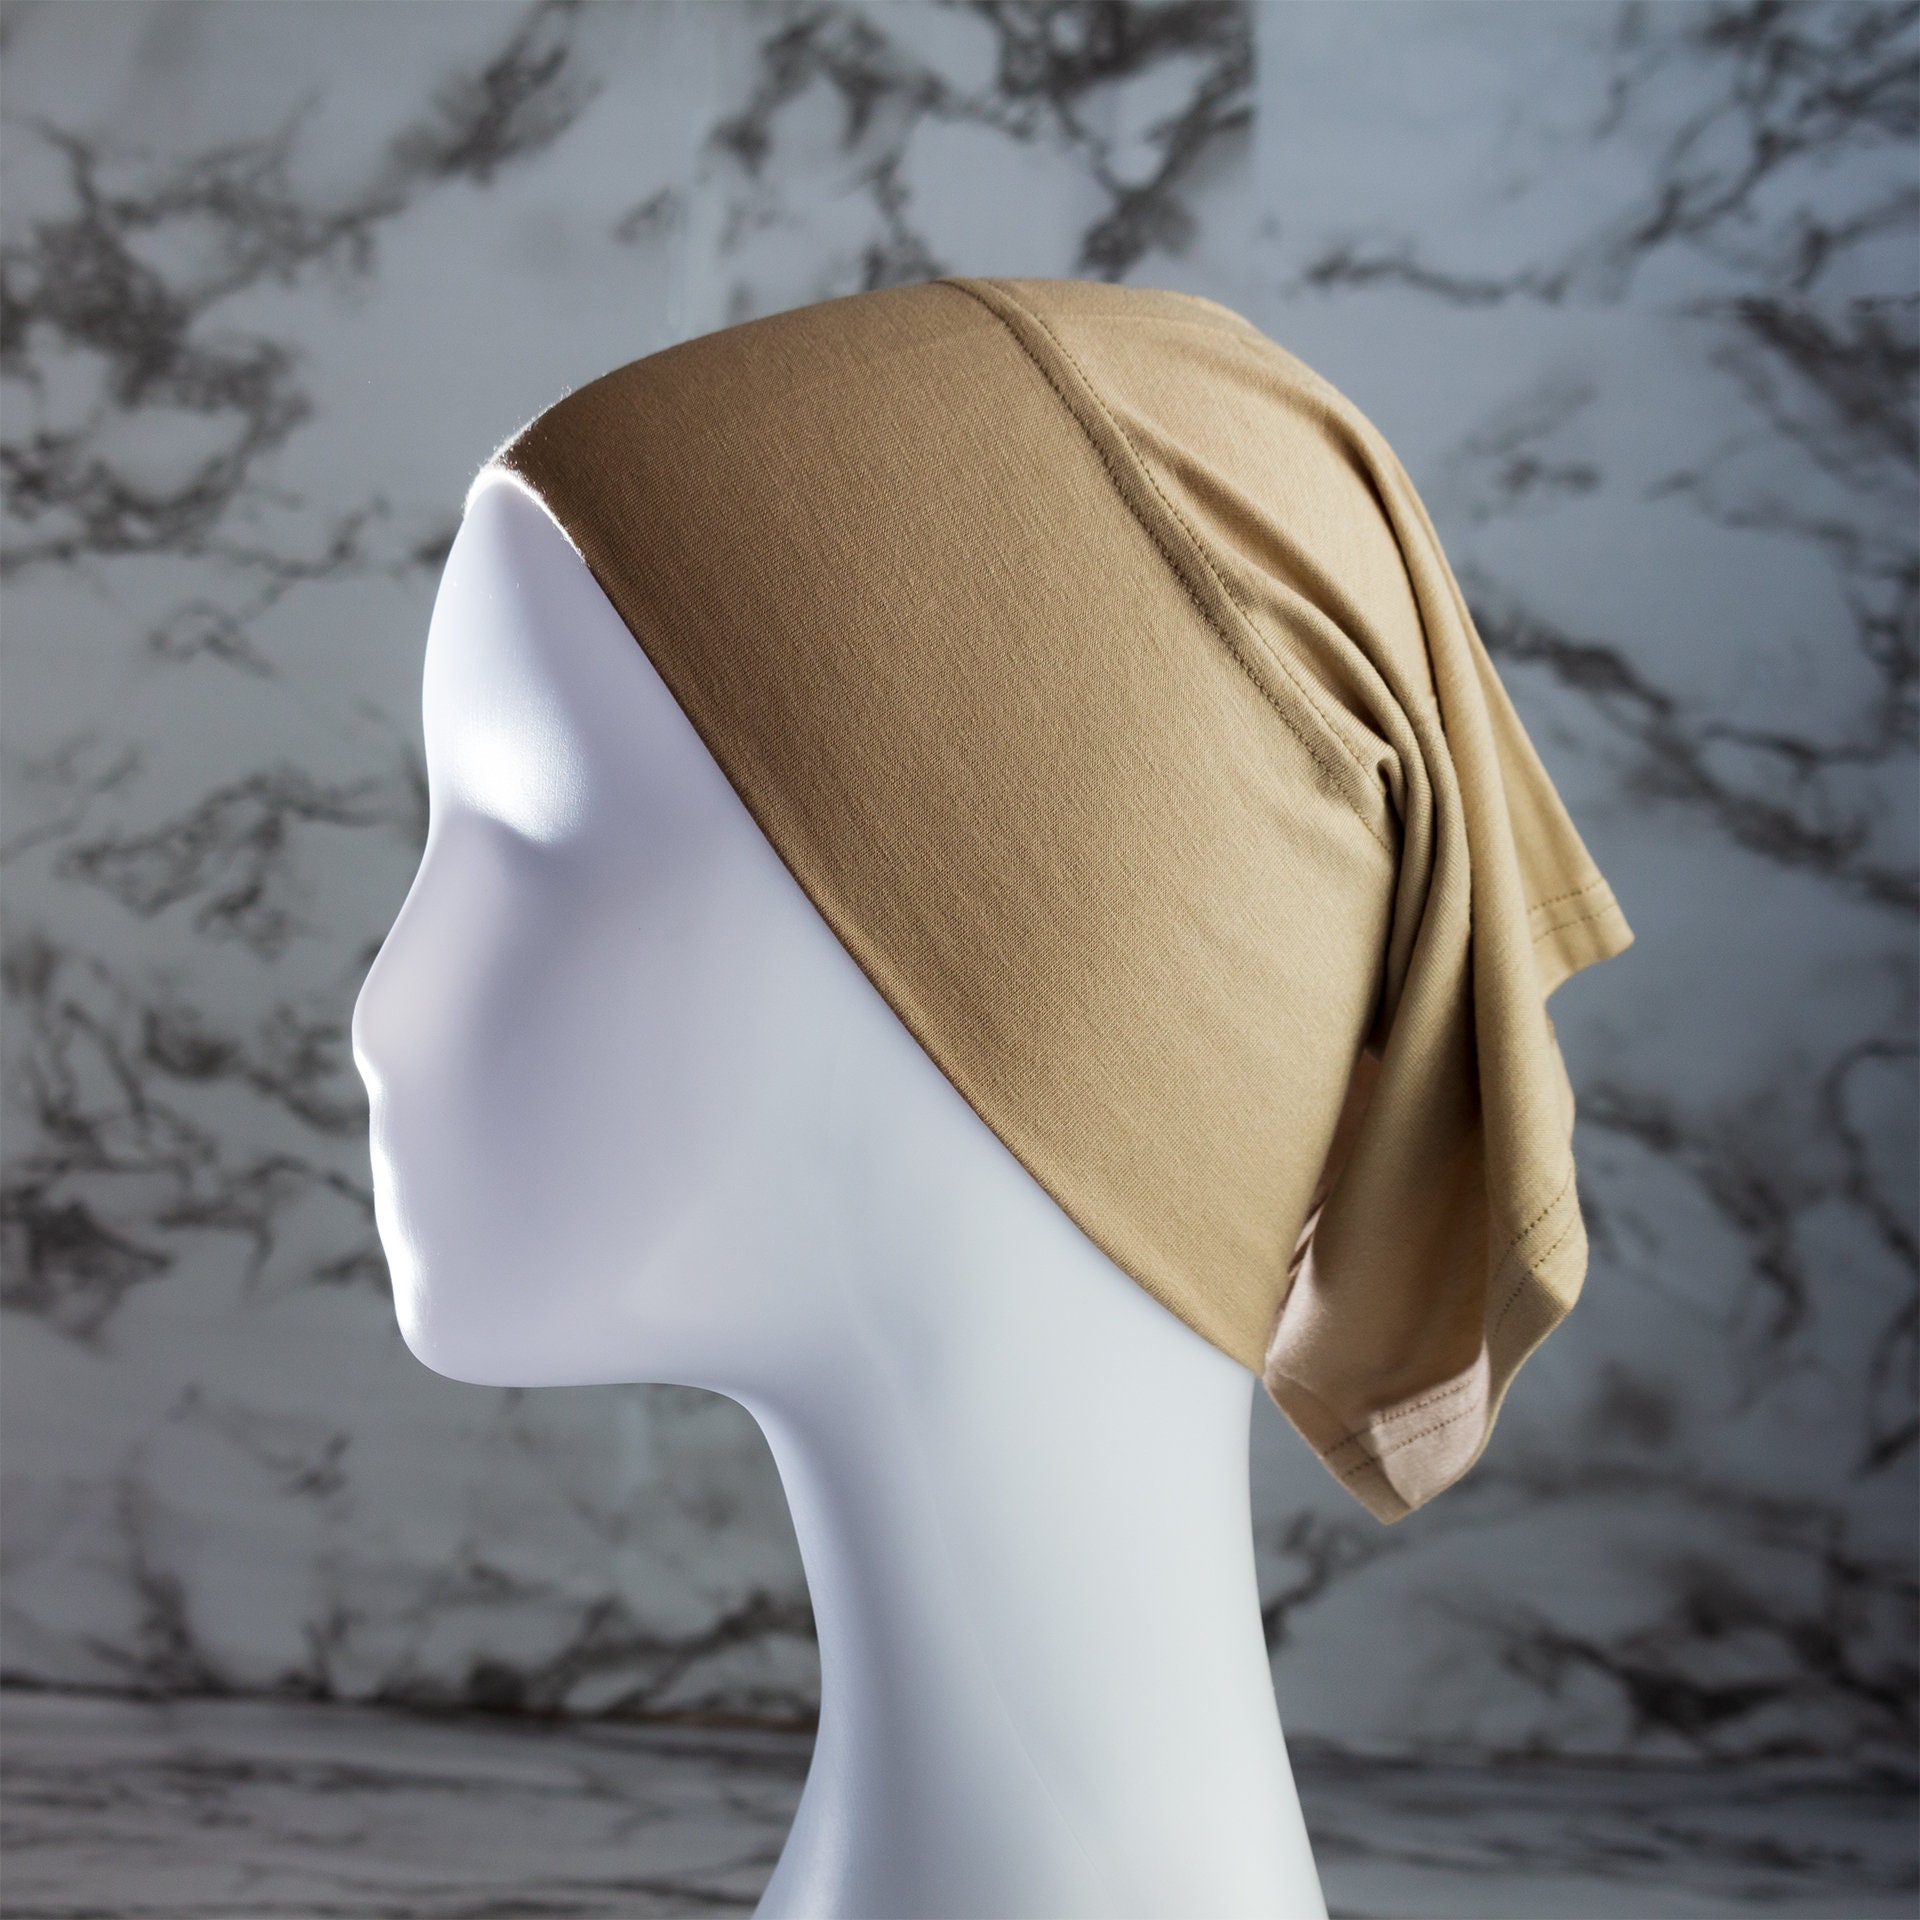 Hijab Under Cap Bonnet, Tube Bonnet, Under Scarf Cap, Bonnet